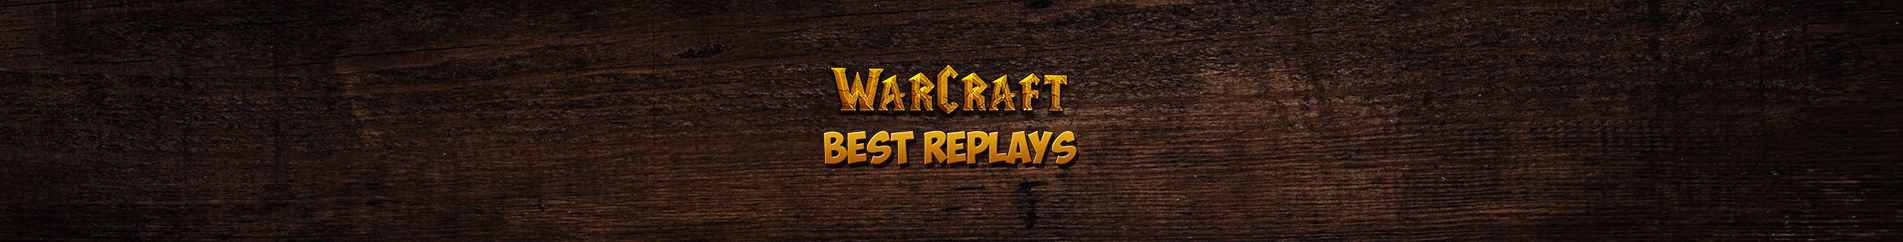 обложка автора WarCraft 3 Best Replays